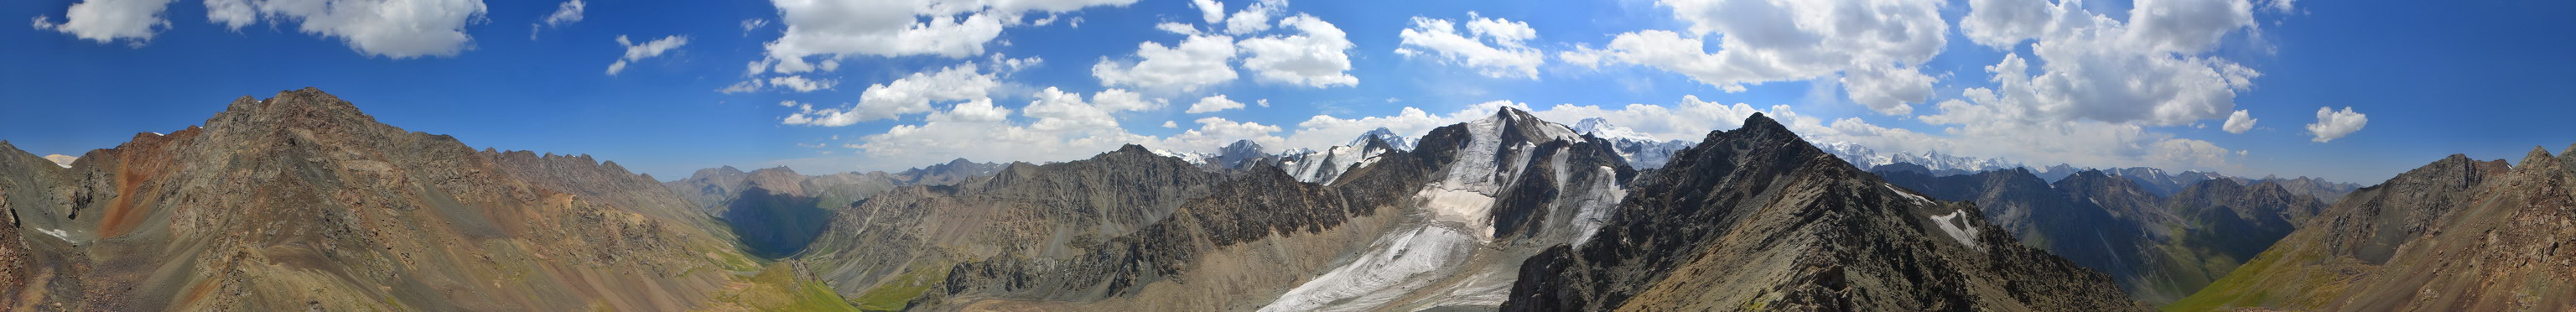 12. 8. 2014 13:01:27: Kyrgyzstán - 2. den treku, výhledy z kopce nad sedlem Telety (Králík)